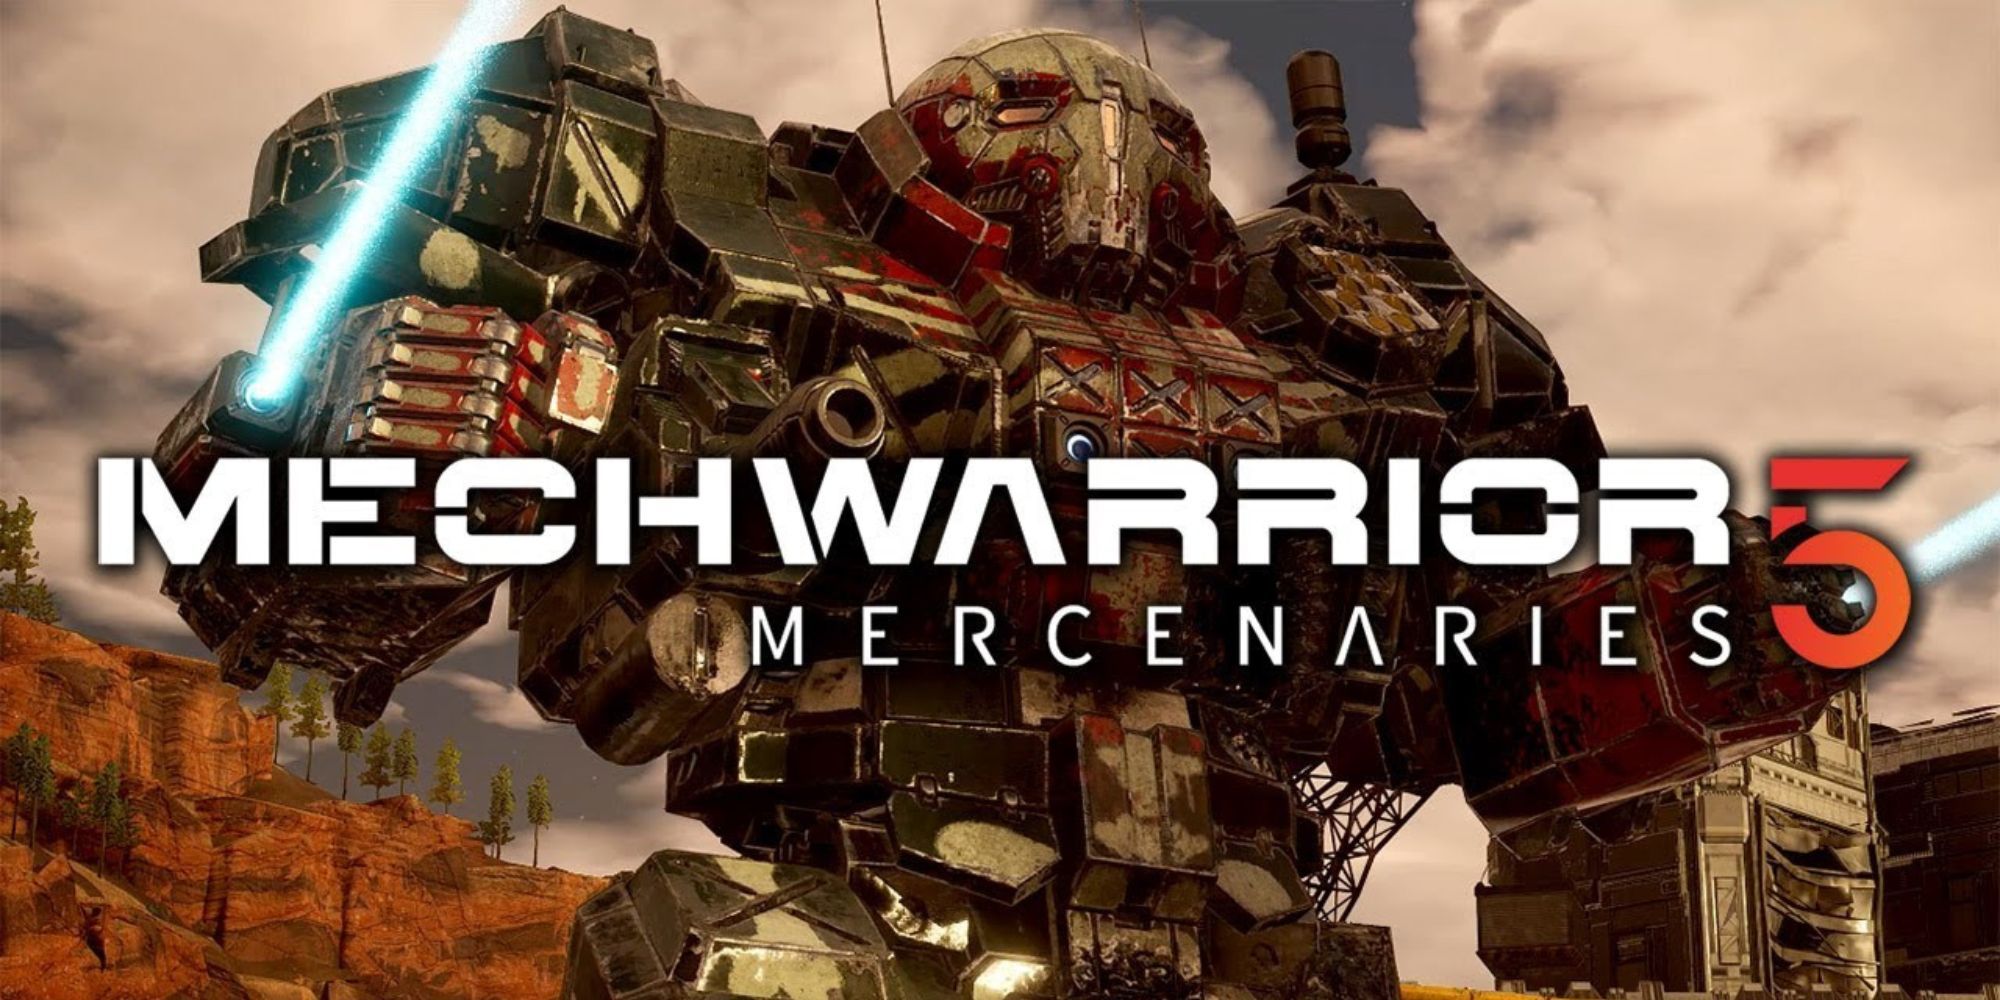 Mechwarrior 5